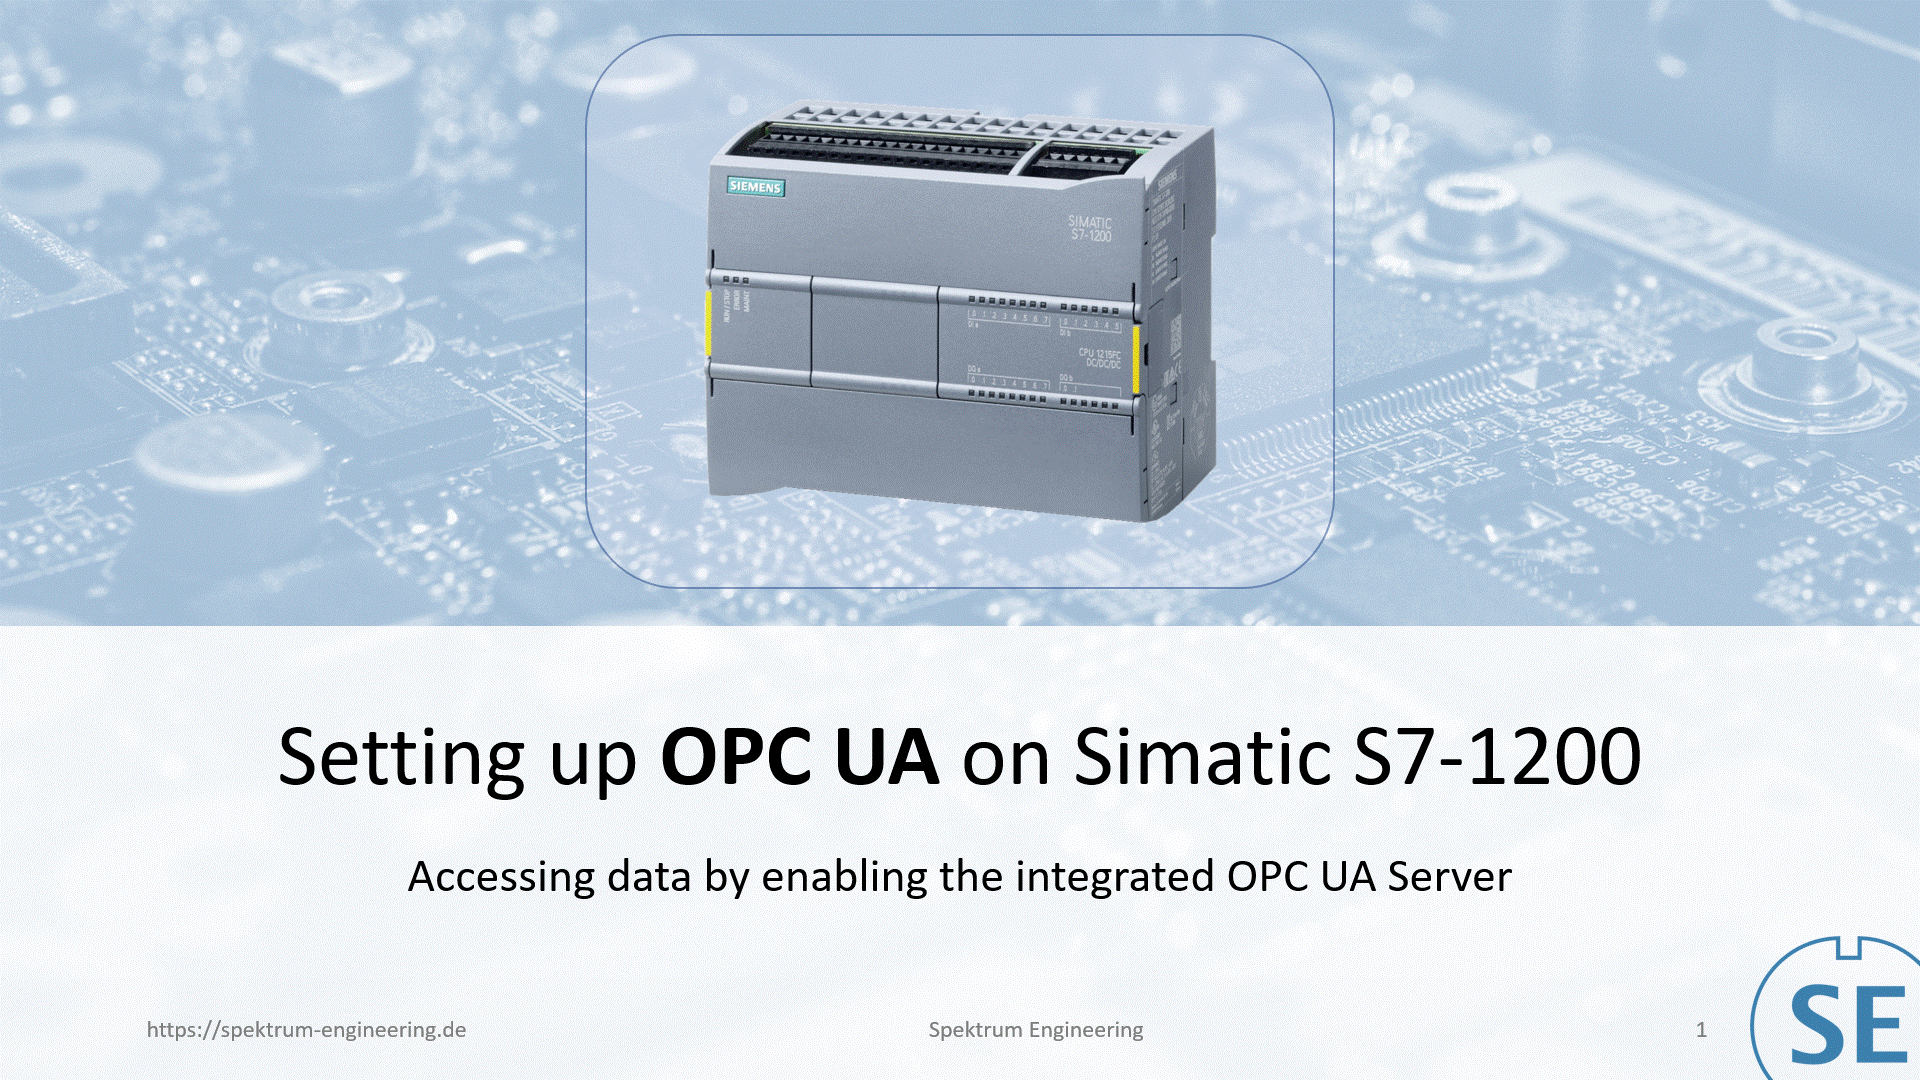 Simatic S7-1200  auf Firmware 4.4 updaten, um OPC UA Server zu nutzen